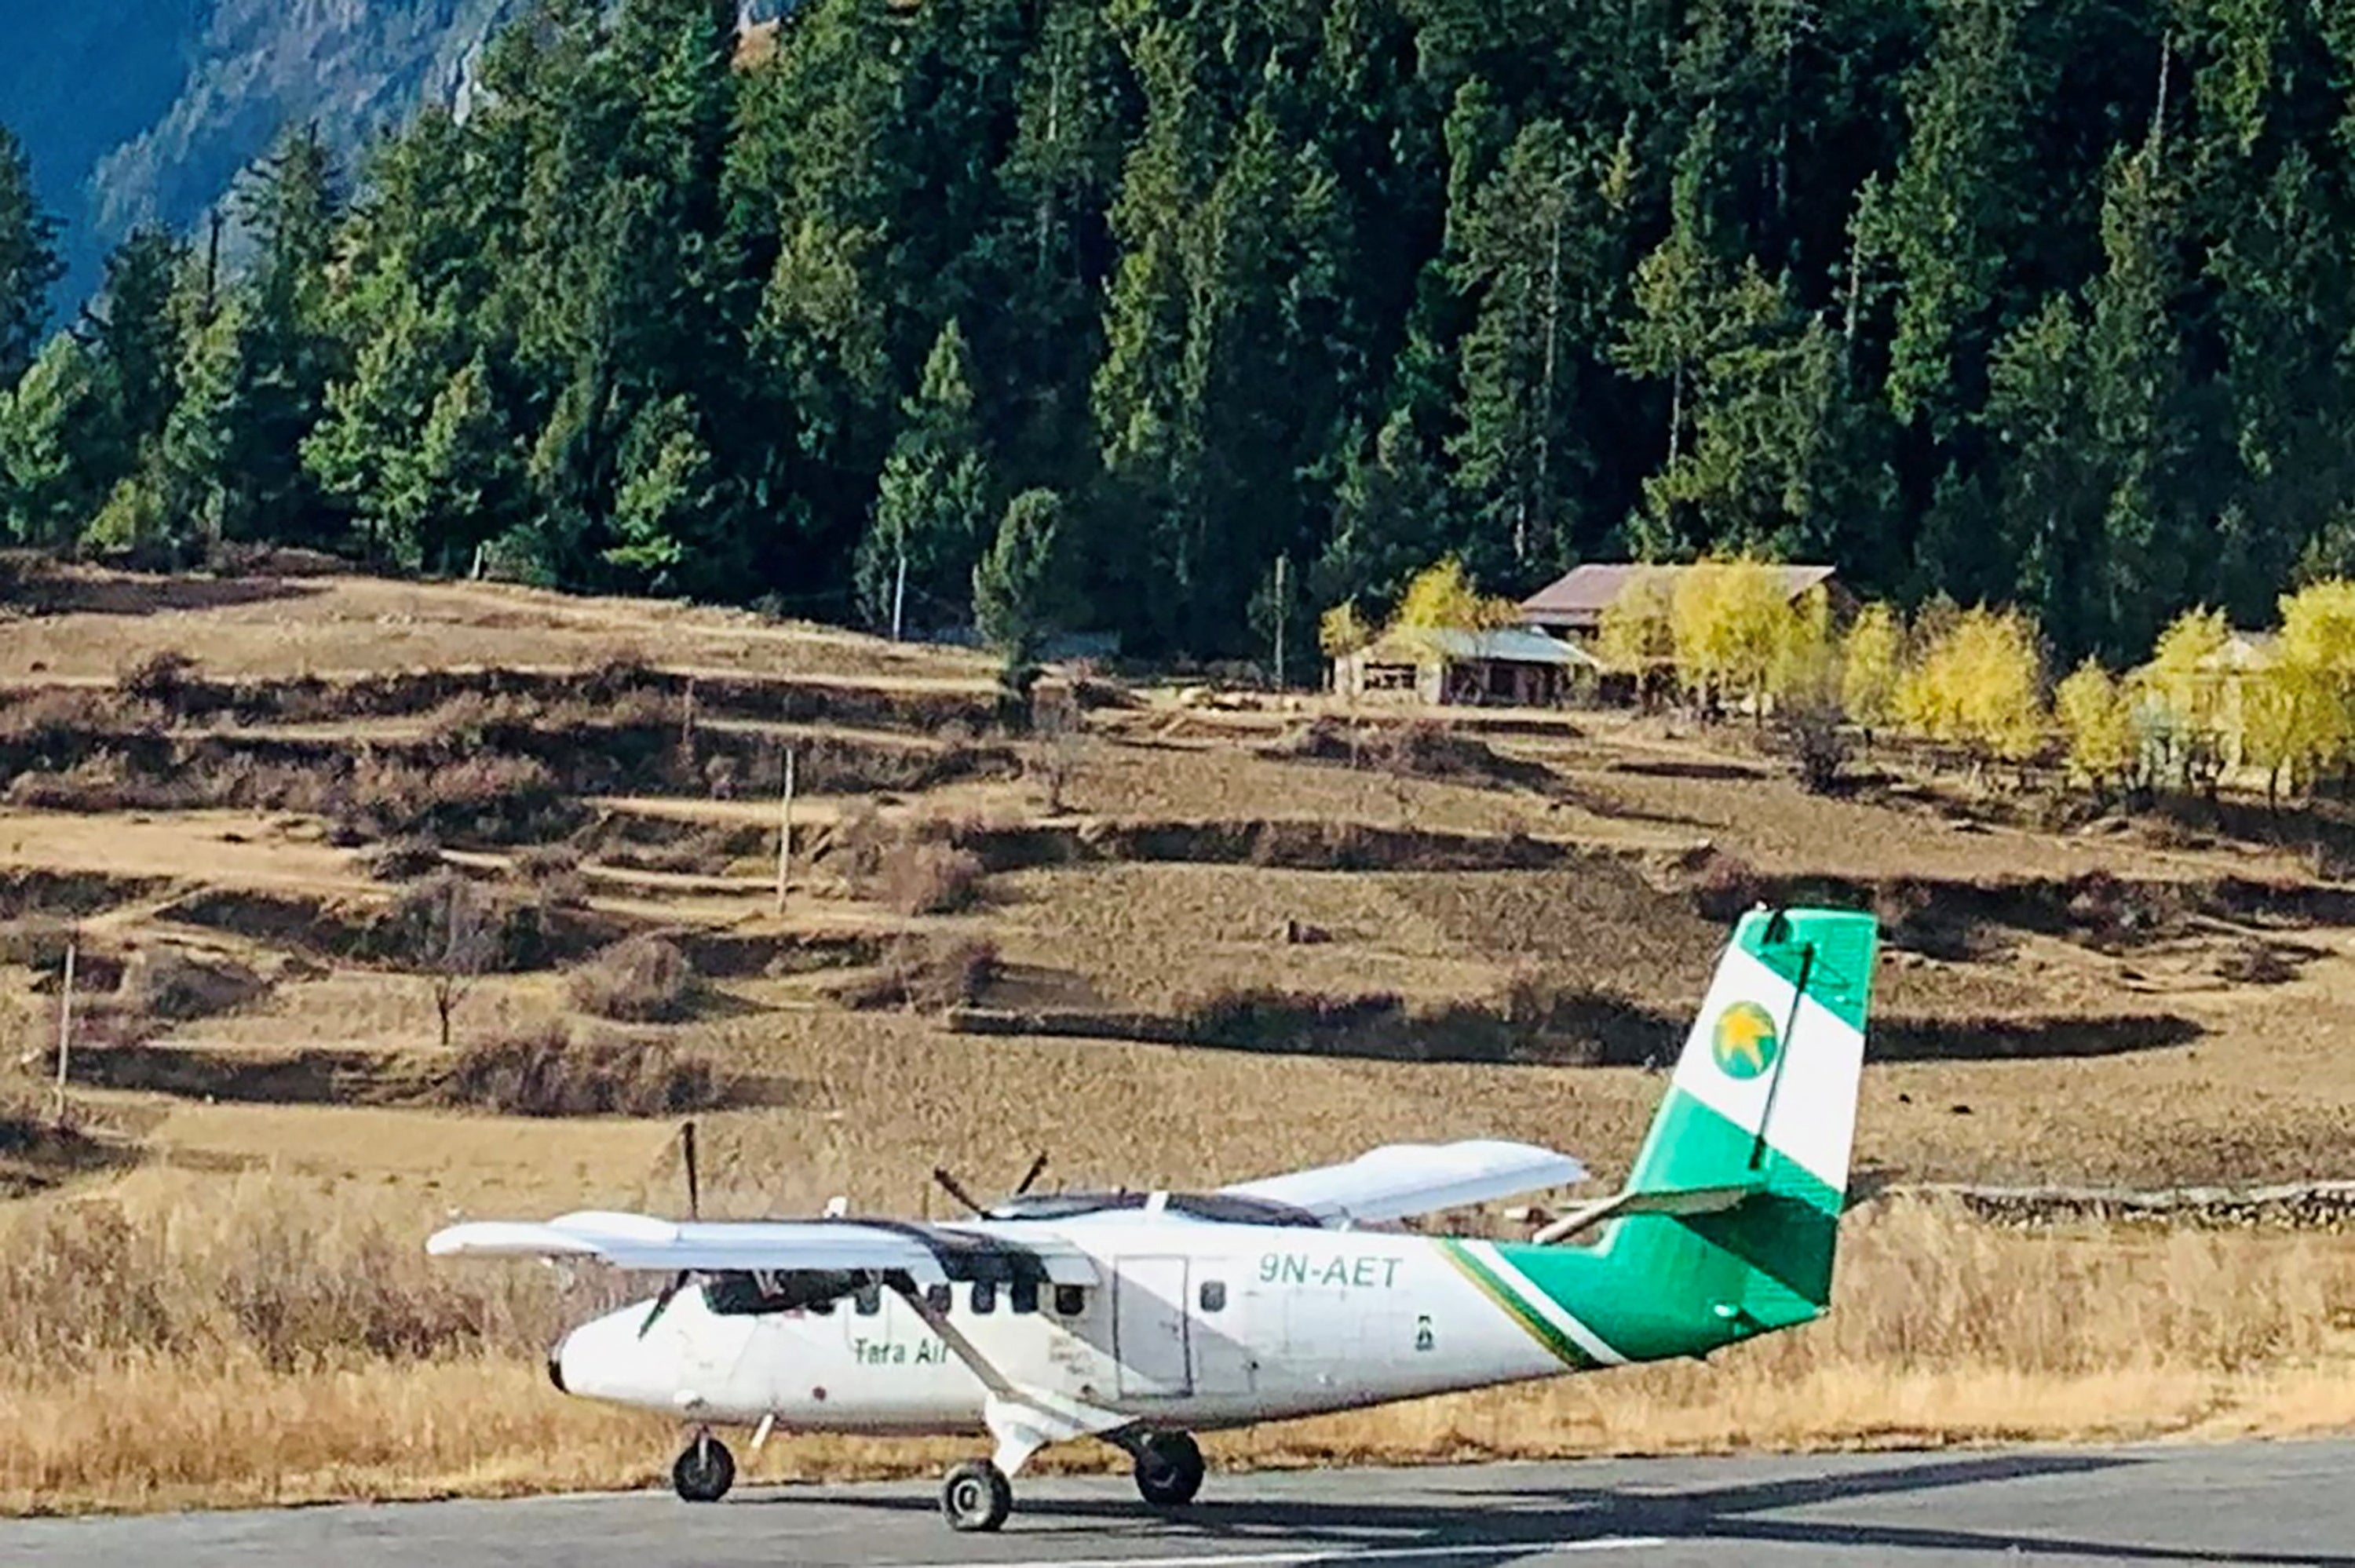 Una imagen distribuida muestra el DHC-6 Twin Otter de Tara Air, con número de cola 9N-AET, en Simikot, Nepal, el 1 de diciembre de 2021